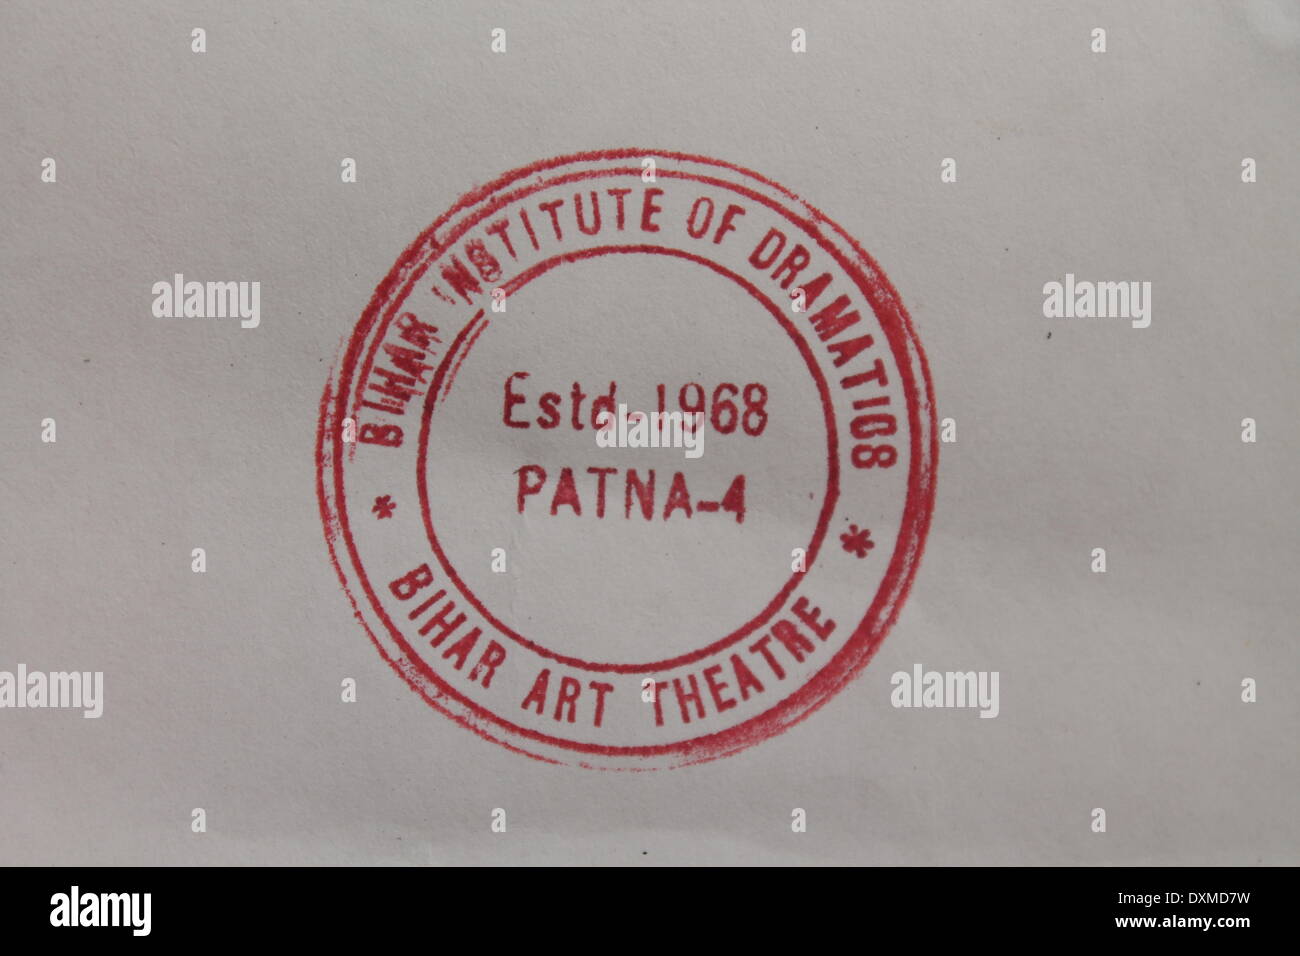 Kalidas, Rangalaya Gandhi Maidan, Patna, Bihar, Inde, 27 mars 2014. Théâtre d'Art de Bihar stamp affiche sur la Journée mondiale du théâtre à Kalidas. Rangalaya Credit : Rupa Ghosh/Alamy Live News. Banque D'Images